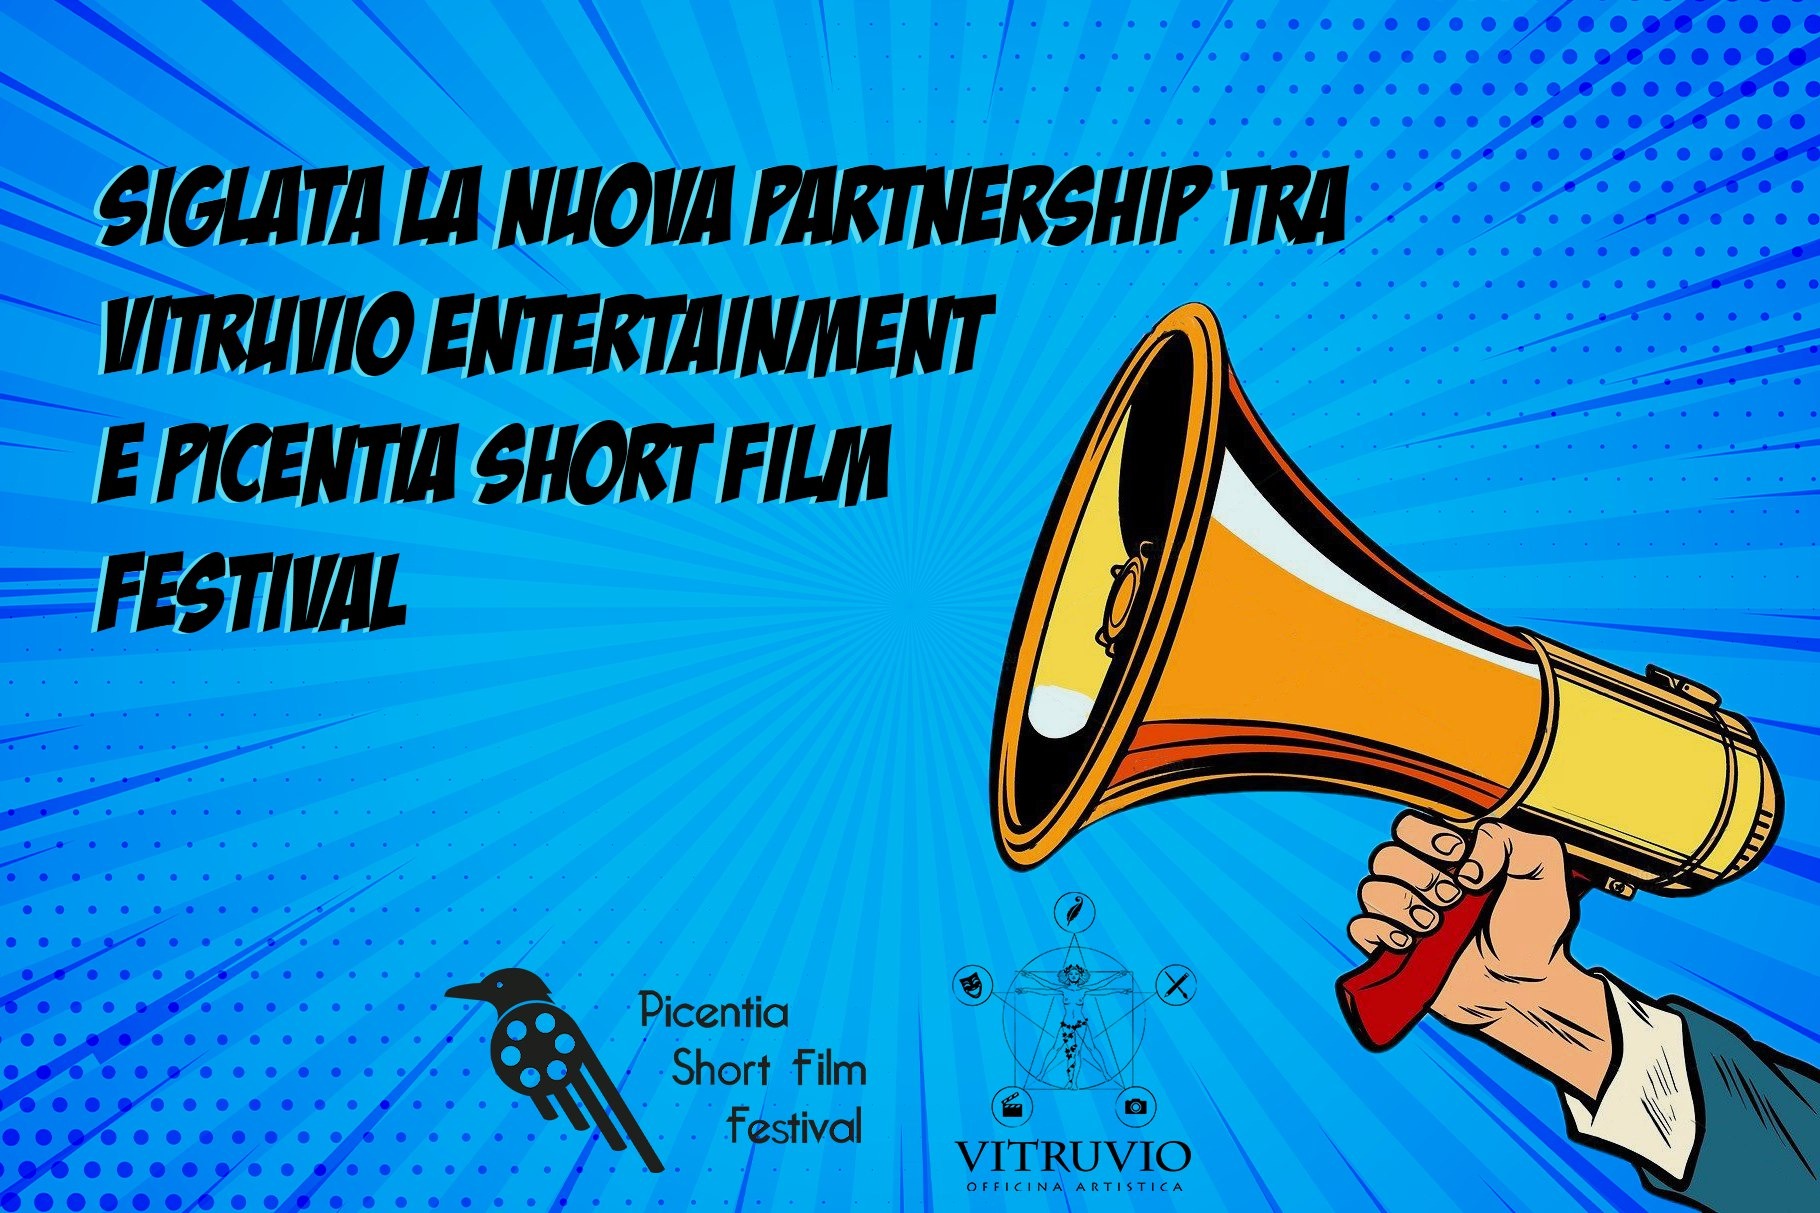 PSFF e Vitruvio Entertainment uniti per la quinta edizione